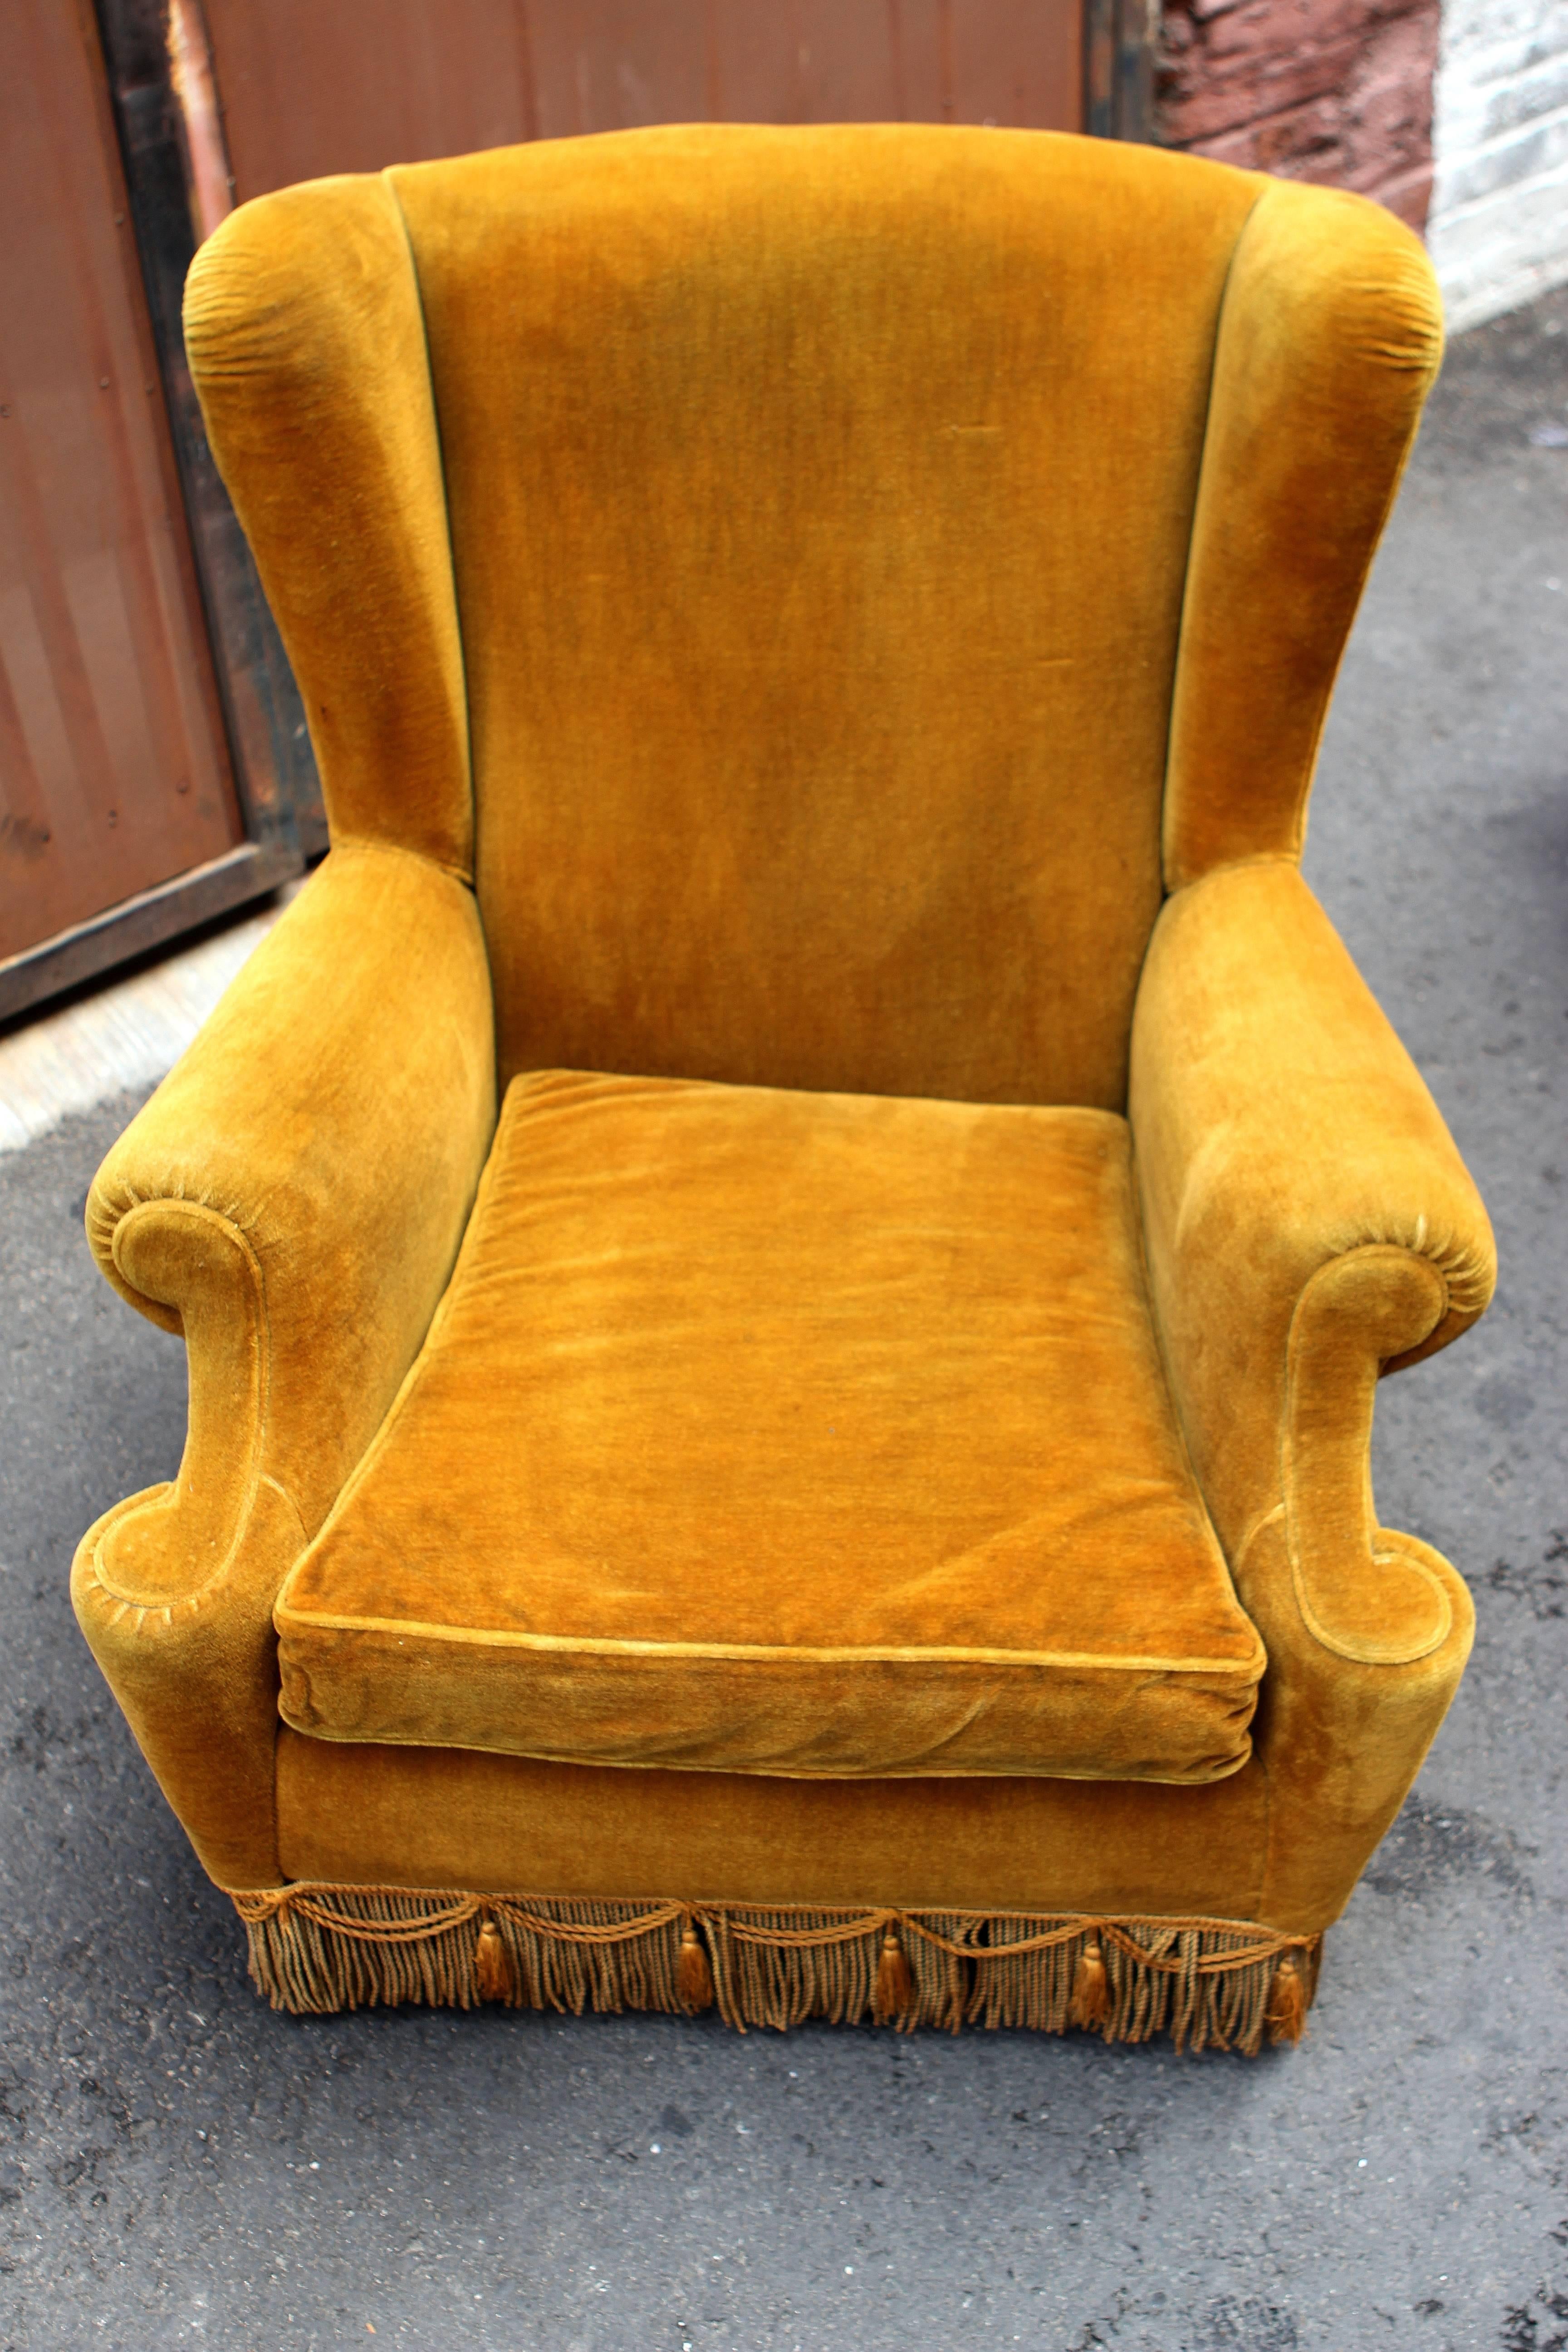 1950s Italian pair of high wing back chairs, original velvet upholstery.
   